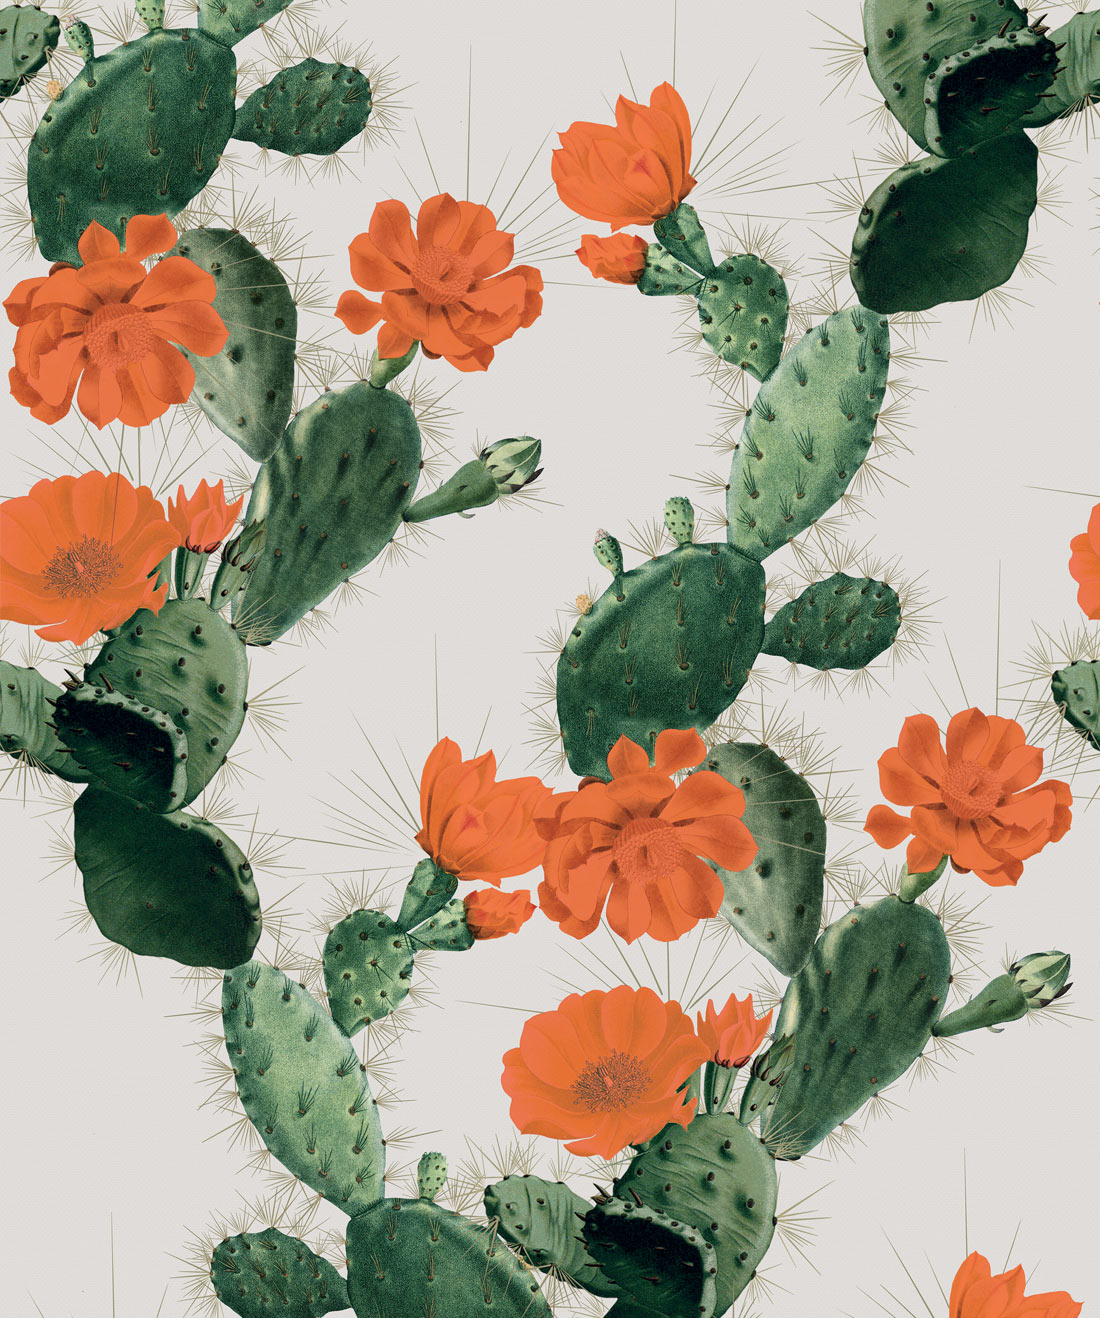 Cactus Wallpaper Images  Free Download on Freepik